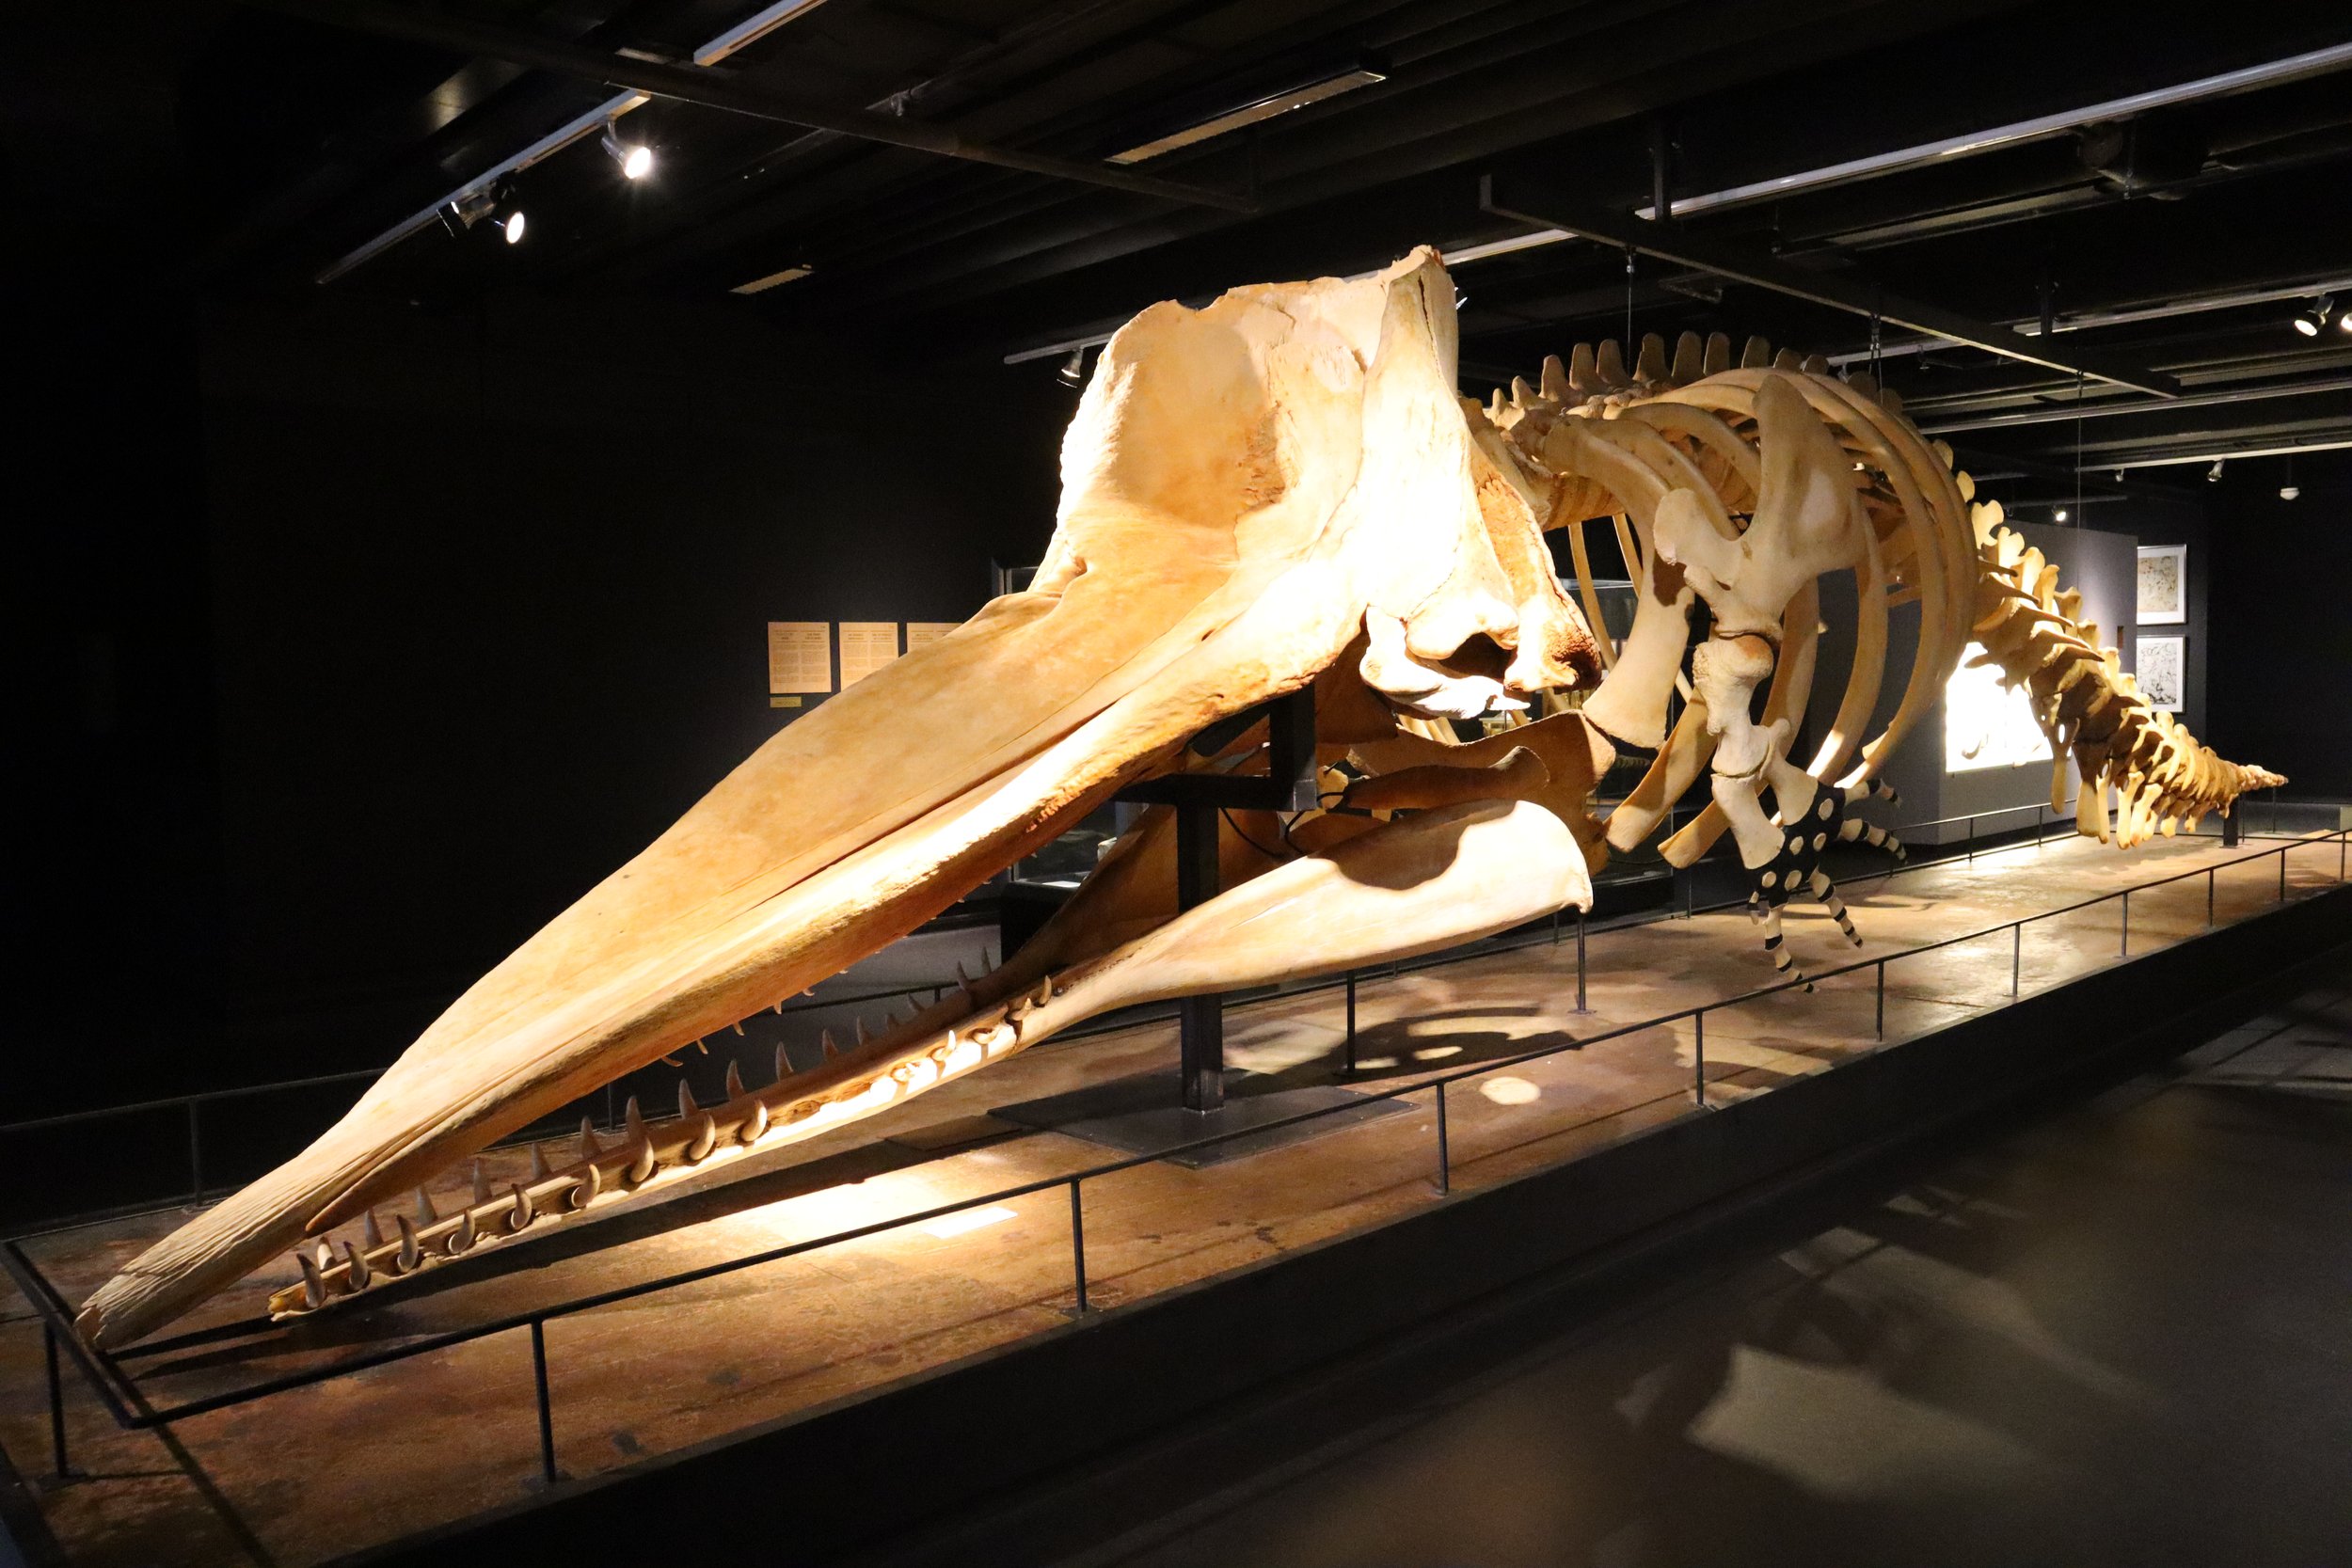 Giant whale skeleton